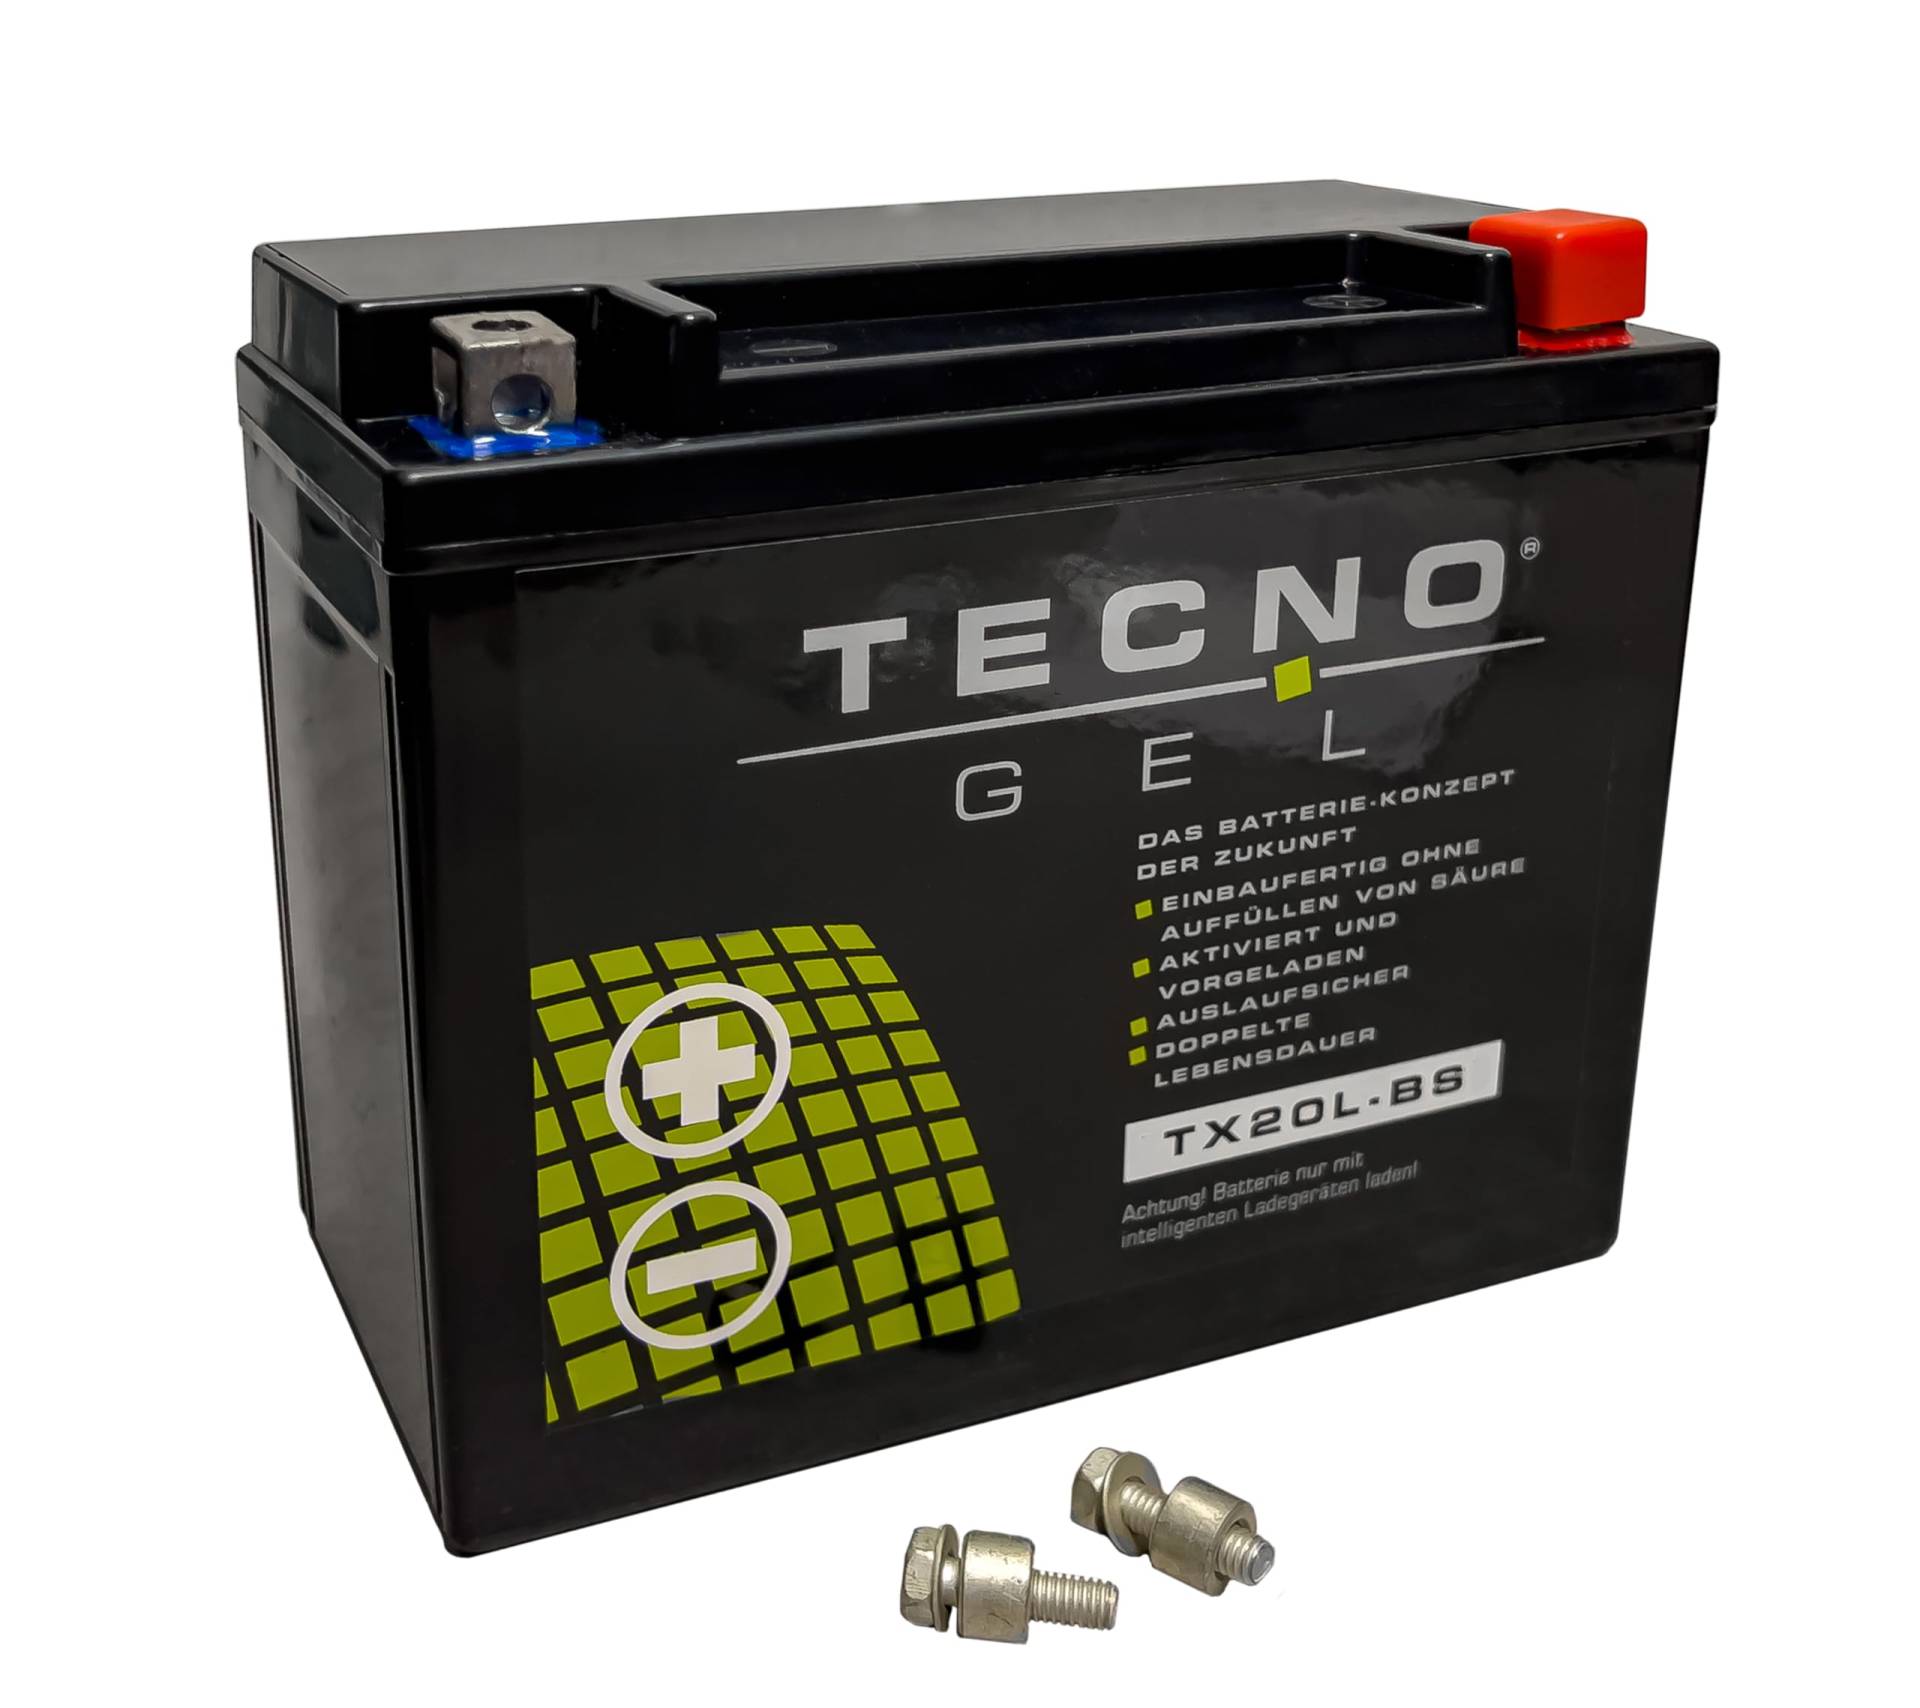 TECNO-GEL Motorrad-Batterie für YTX20L-BS für TRIUMPH Rocket 2300 III div. m/o. ABS 2004-2018, 12V Gel-Batterie 20Ah (DIN 82000), 175x87x155 mm von Wirth-Federn